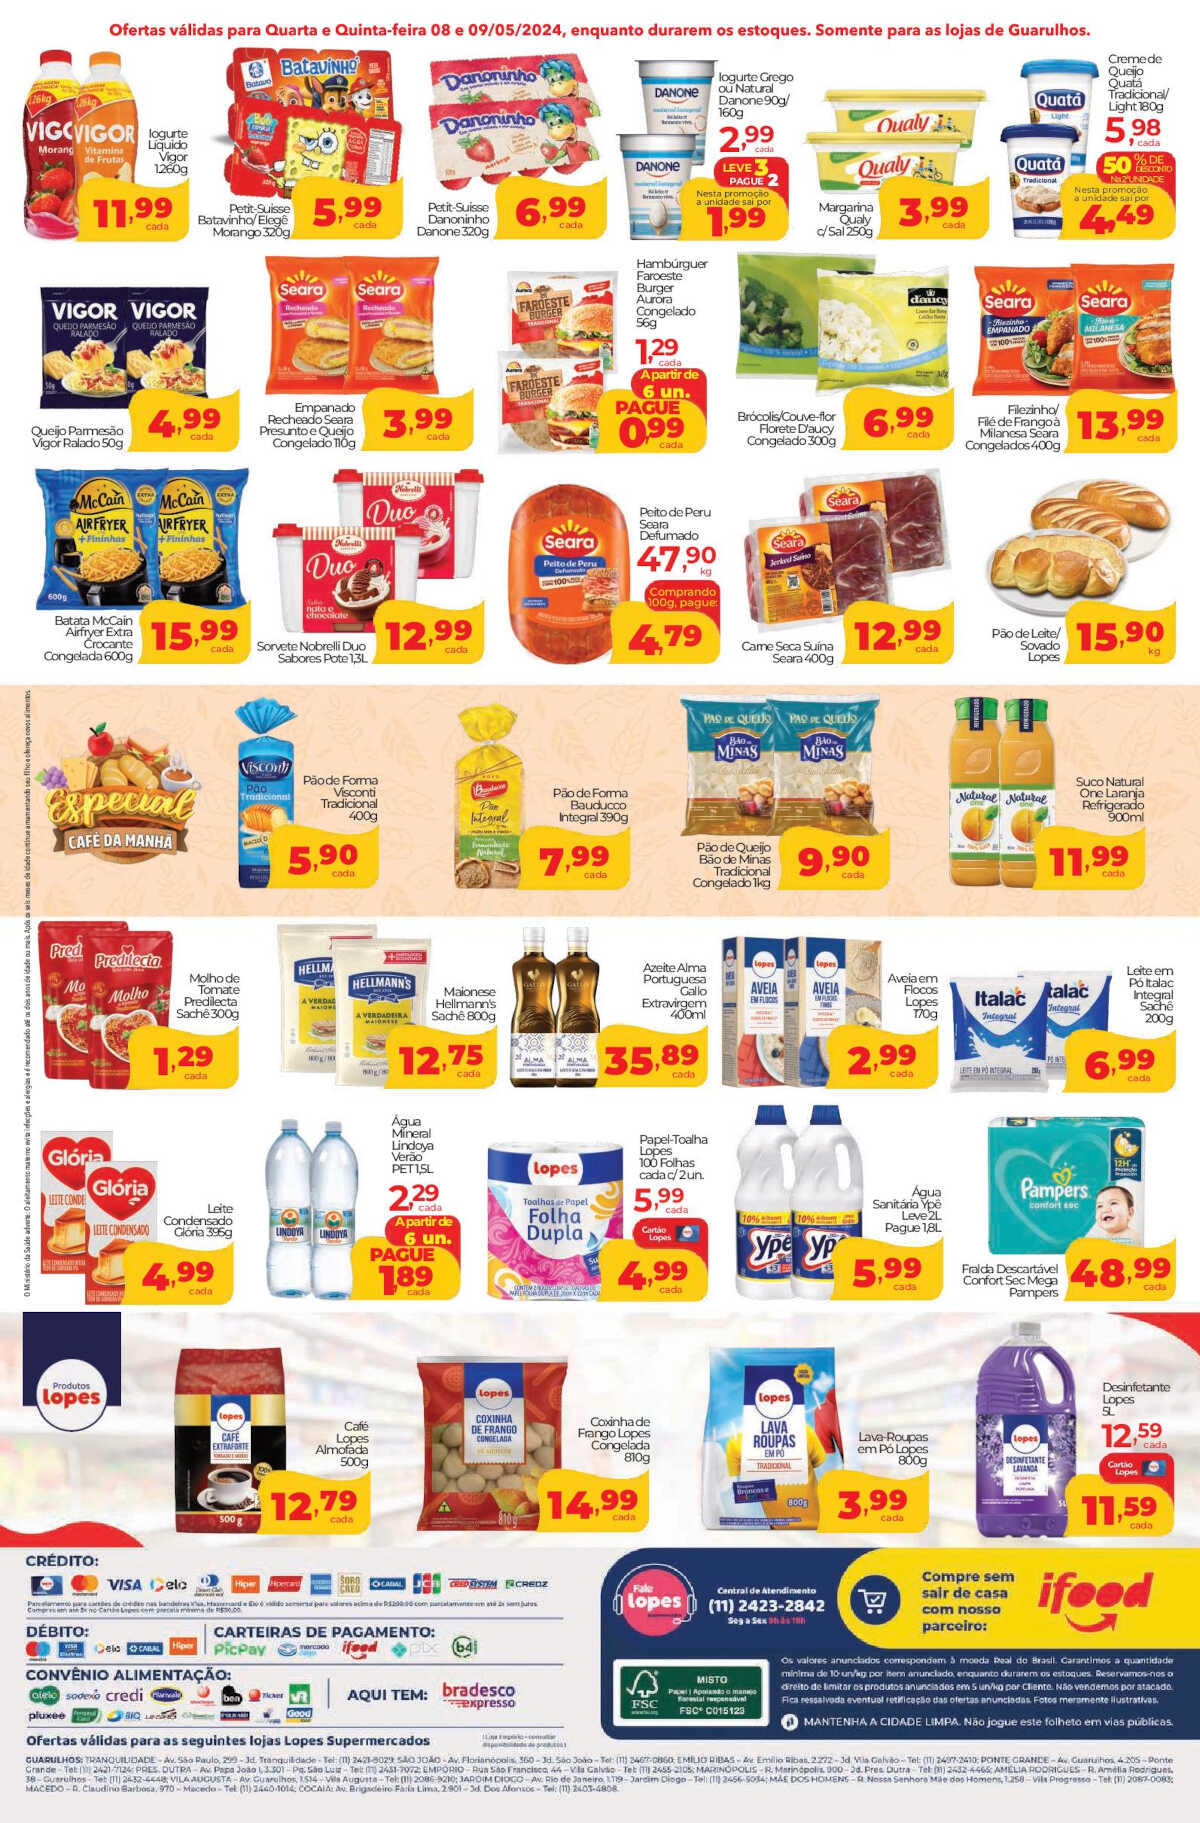 Ofertas Lopes Supermercados até 09/05